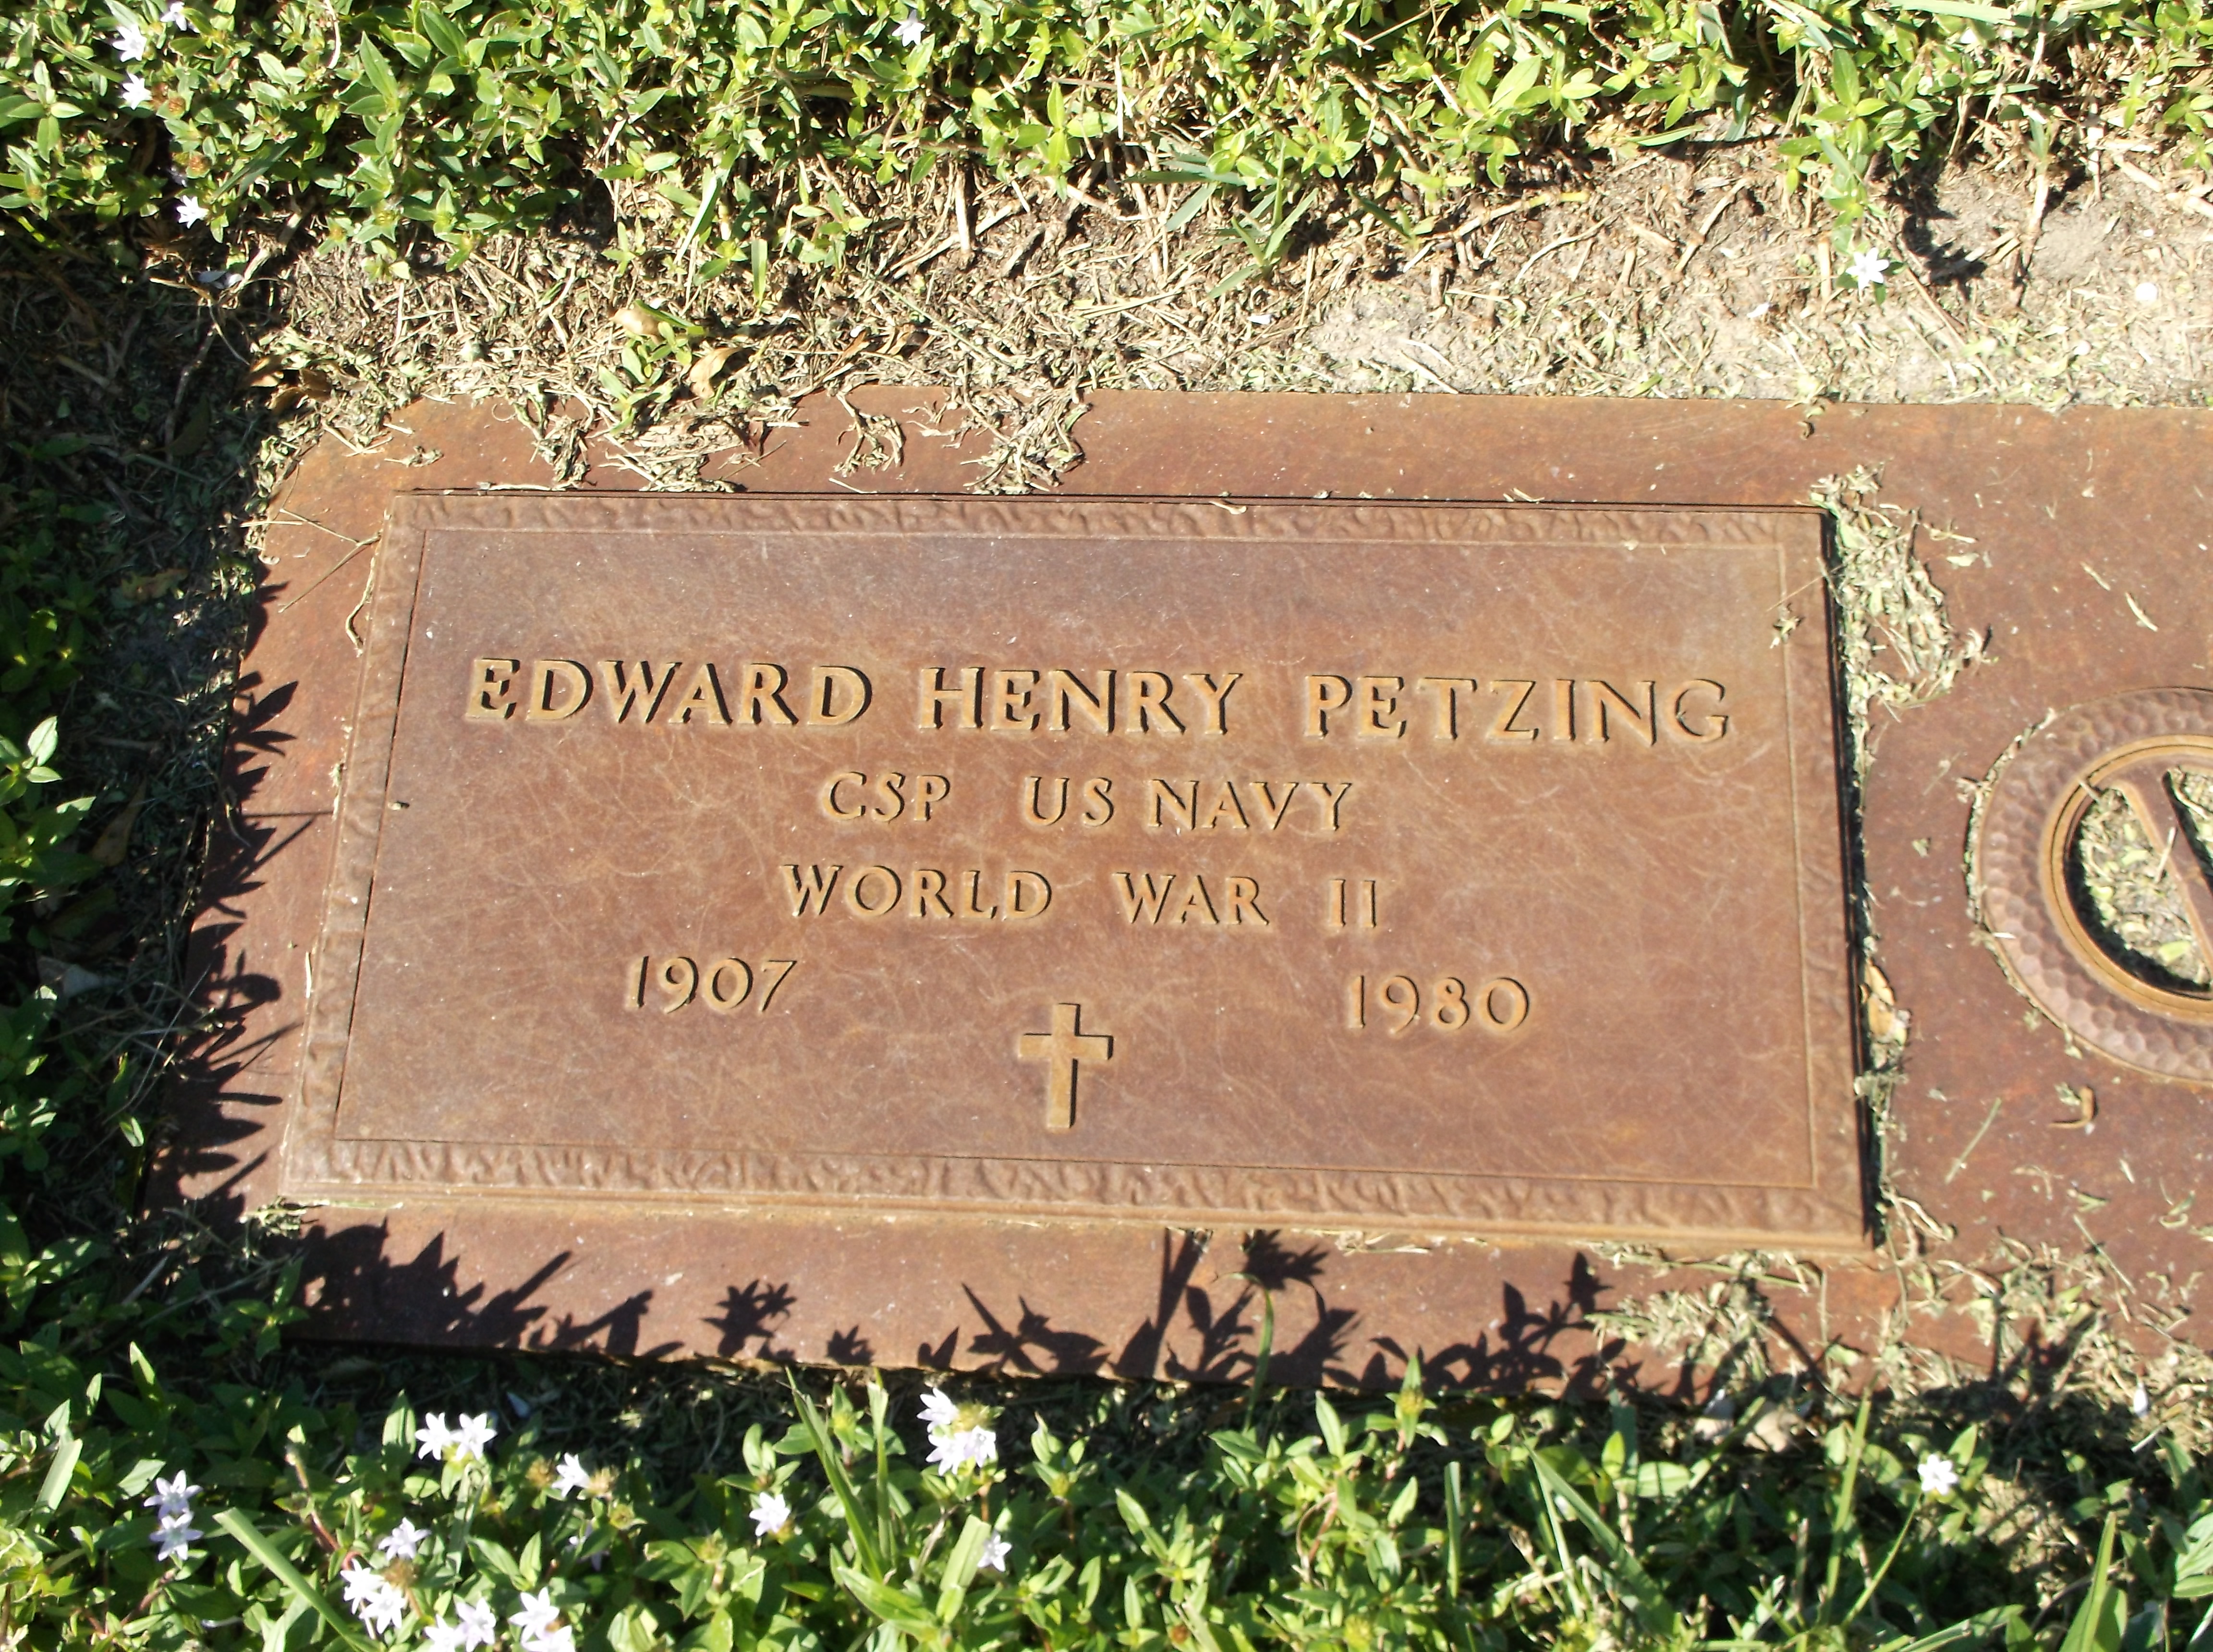 Edward Henry Petzing